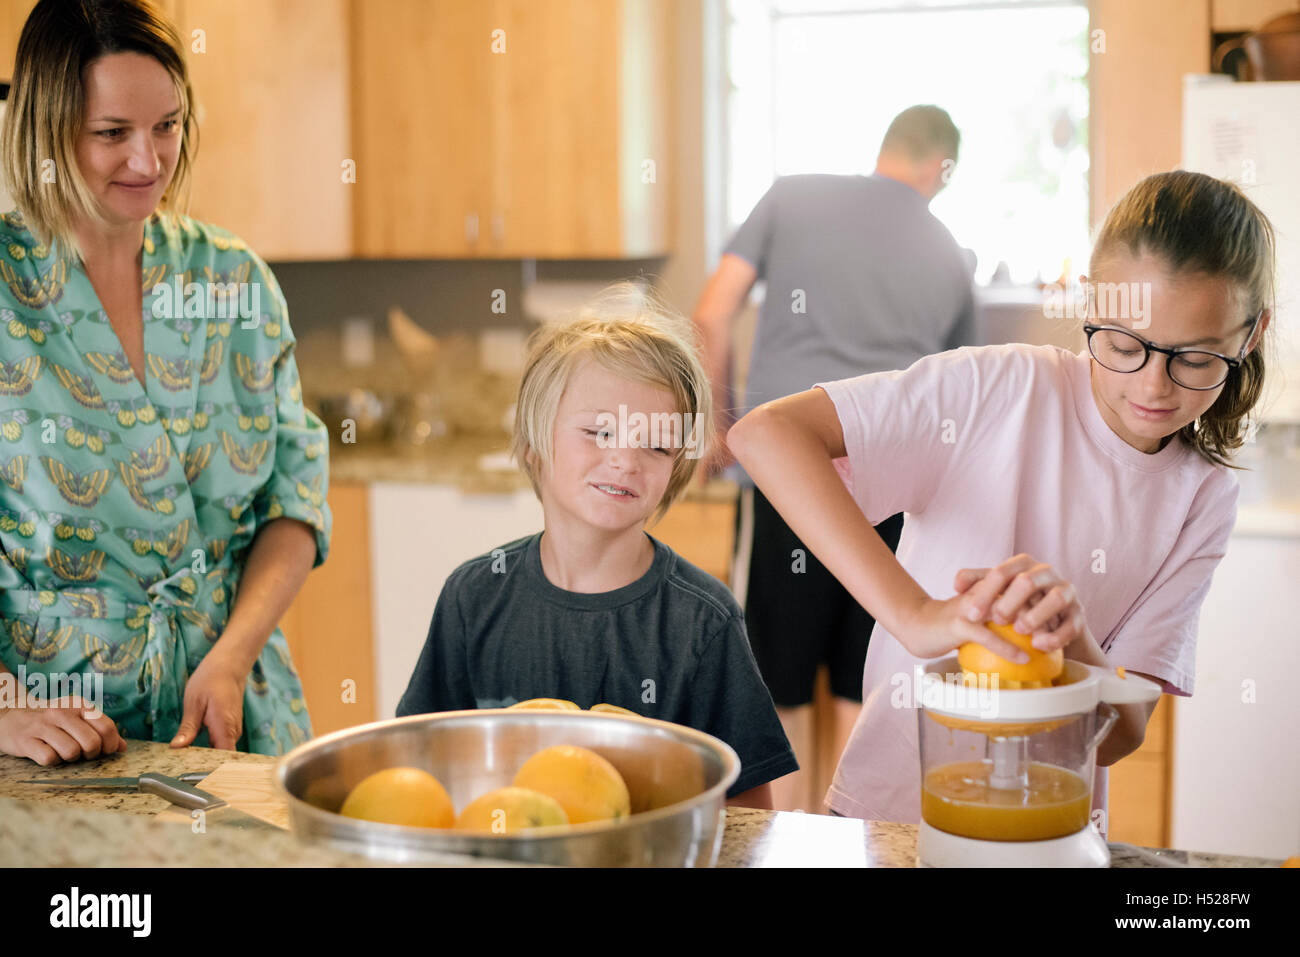 La famiglia prepara la colazione in cucina, ragazza spremitura di arance. Foto Stock